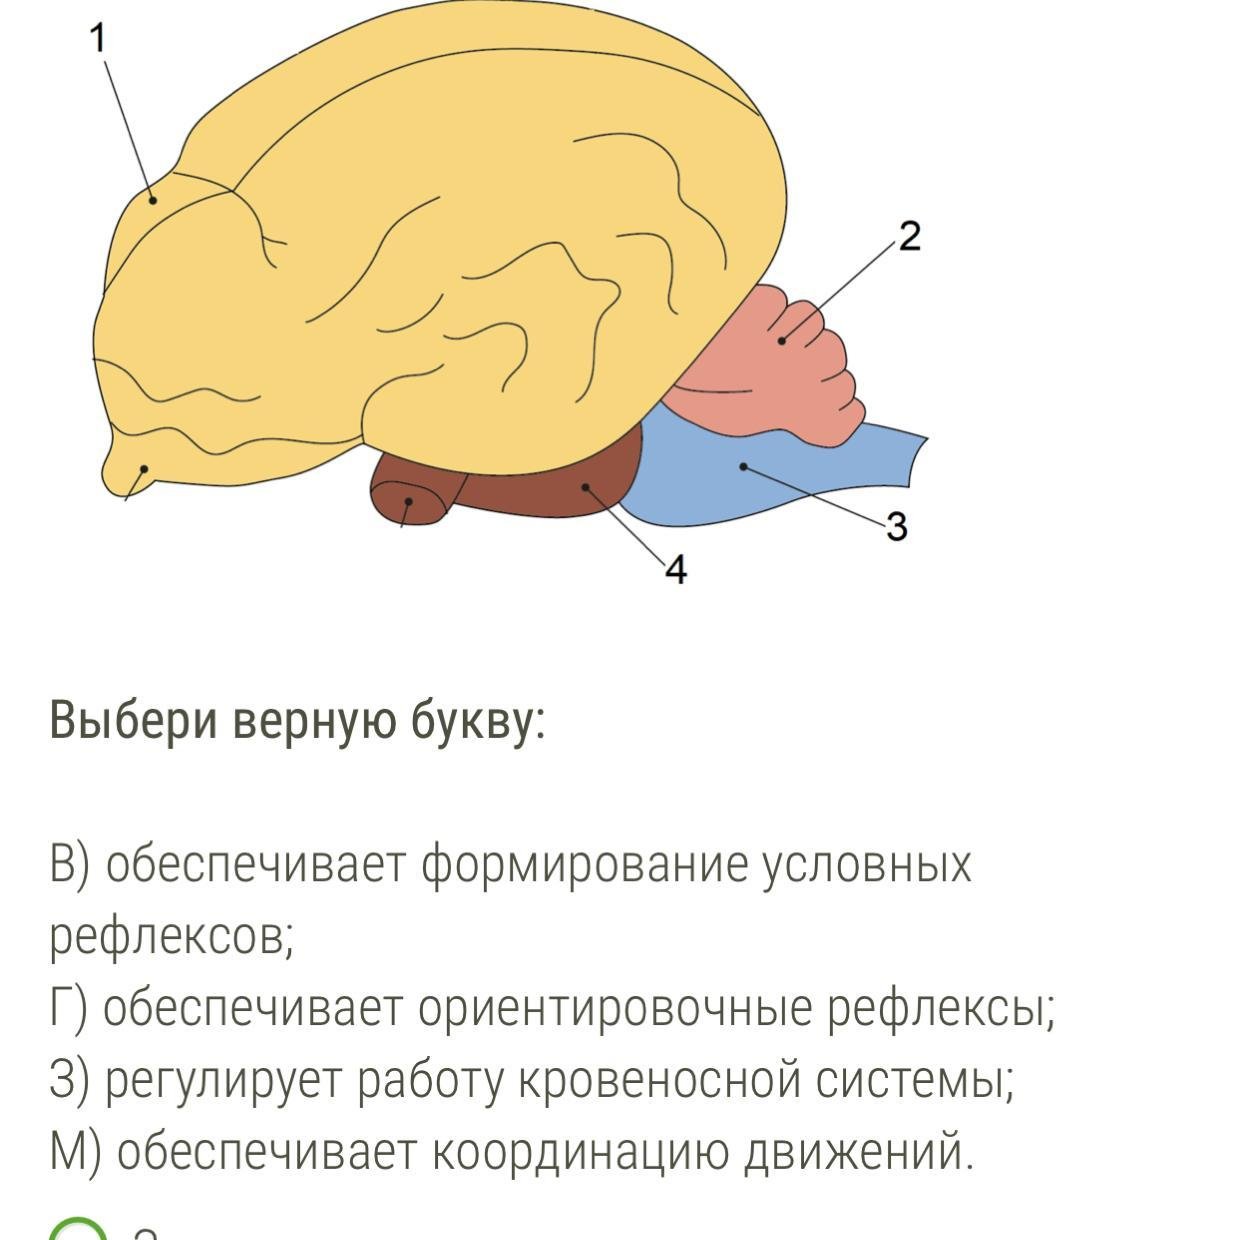 Какой отдел мозга млекопитающих имеет два полушария. Мозг млекопитающих. Отделы головного мозга млекопитающих. Строение головного мозга млекопитающих. Функции мозга млекопитающих.